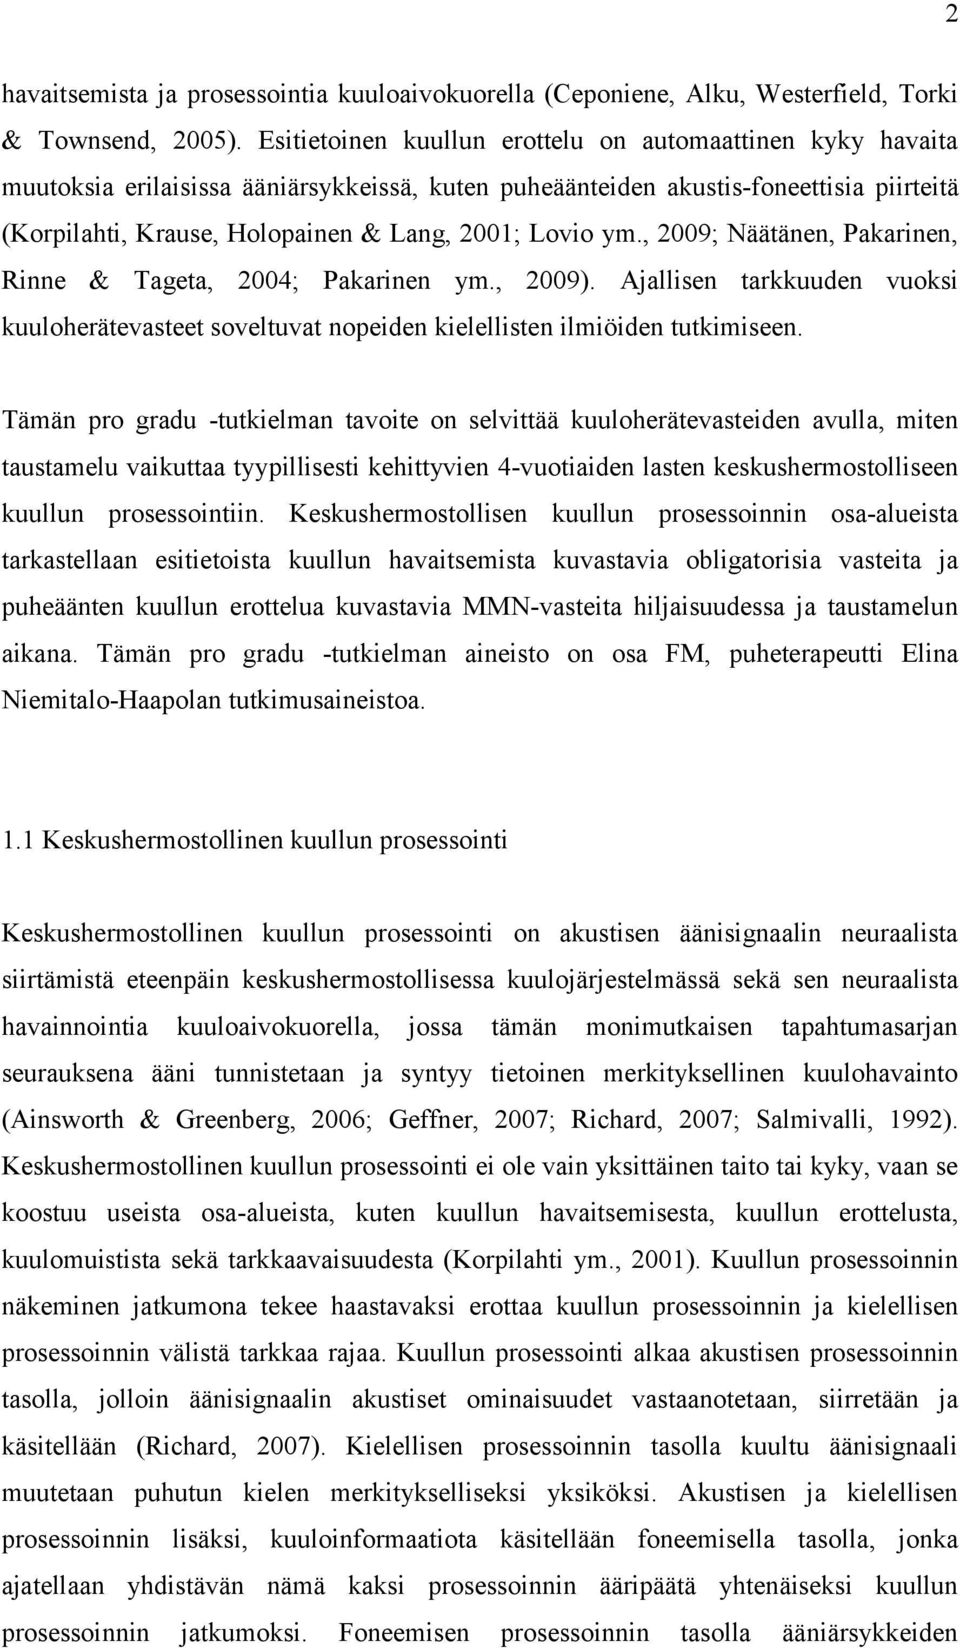 Lovio ym., 2009; Näätänen, Pakarinen, Rinne & Tageta, 2004; Pakarinen ym., 2009). Ajallisen tarkkuuden vuoksi kuuloherätevasteet soveltuvat nopeiden kielellisten ilmiöiden tutkimiseen.